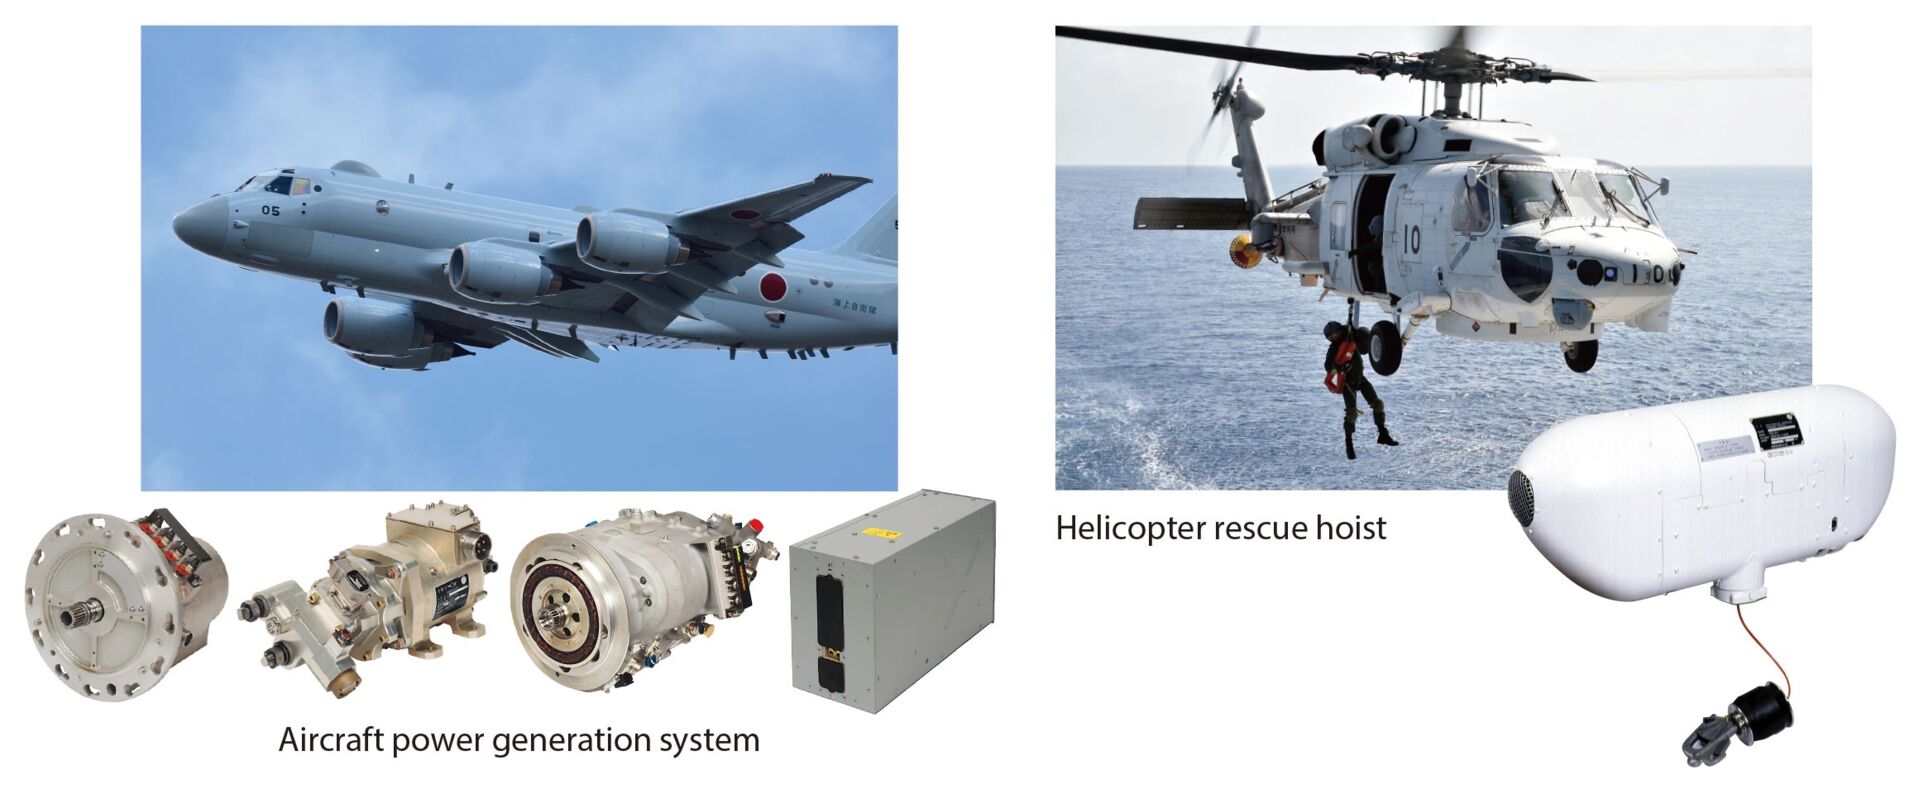 航空機用電源システム、ヘリコプター用救難ホイスト